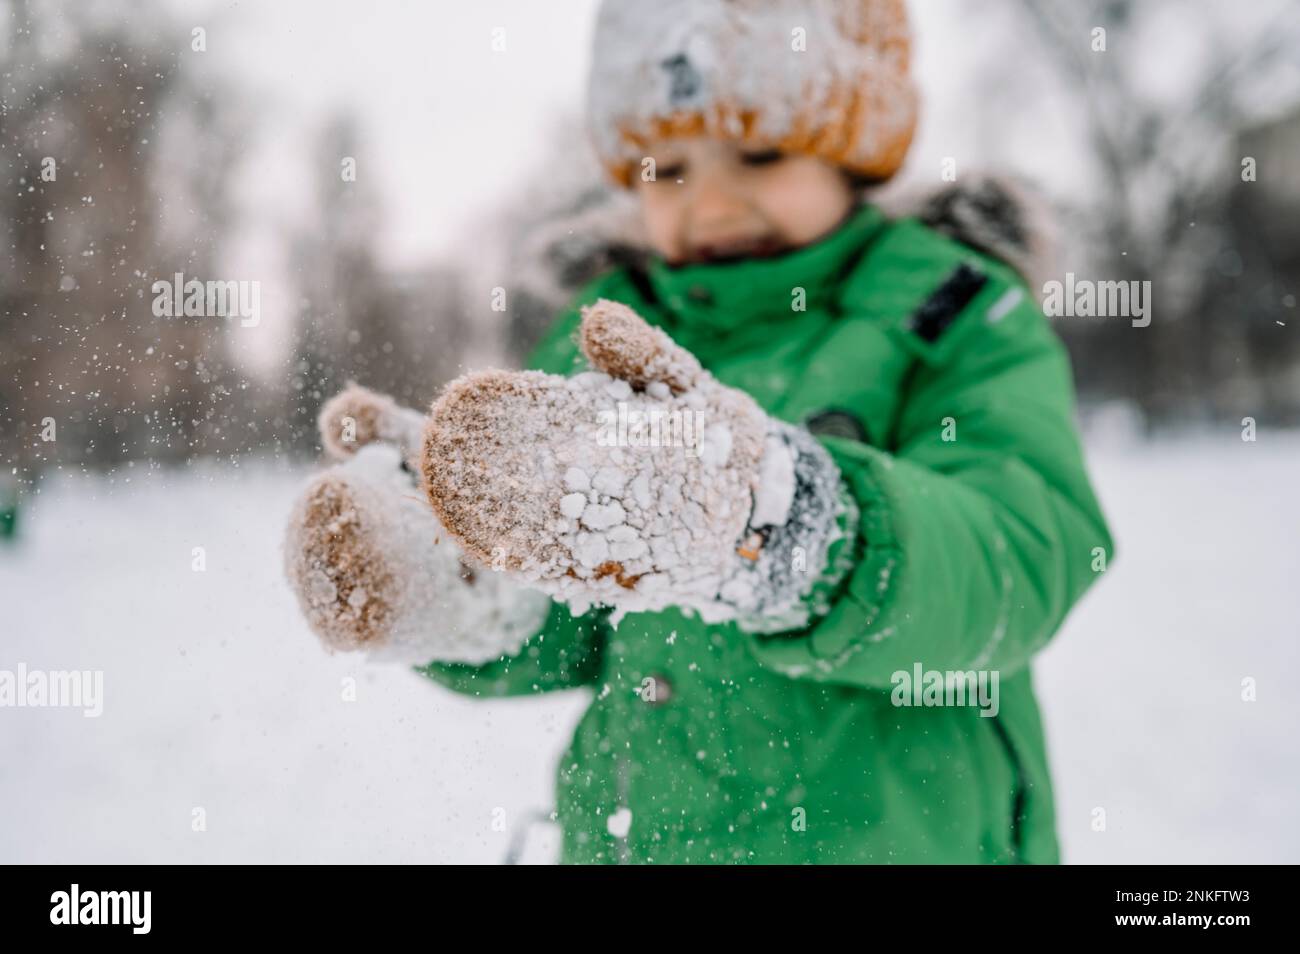 Ein Junge mit Handschuhen, der mit Schnee spielt Stockfoto